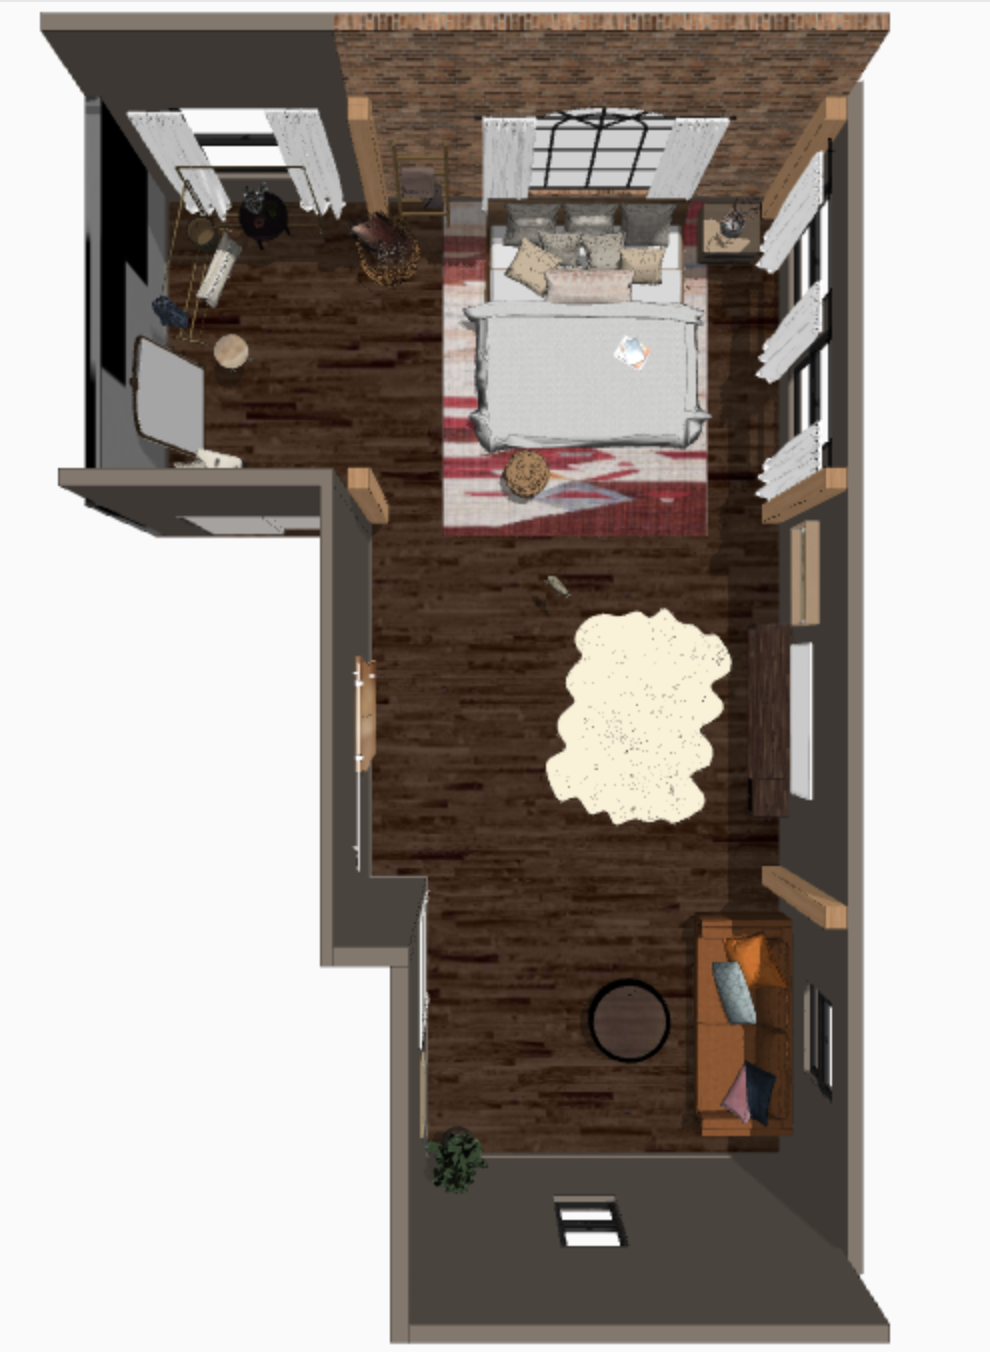 Boise Lifestyle Studio layout design